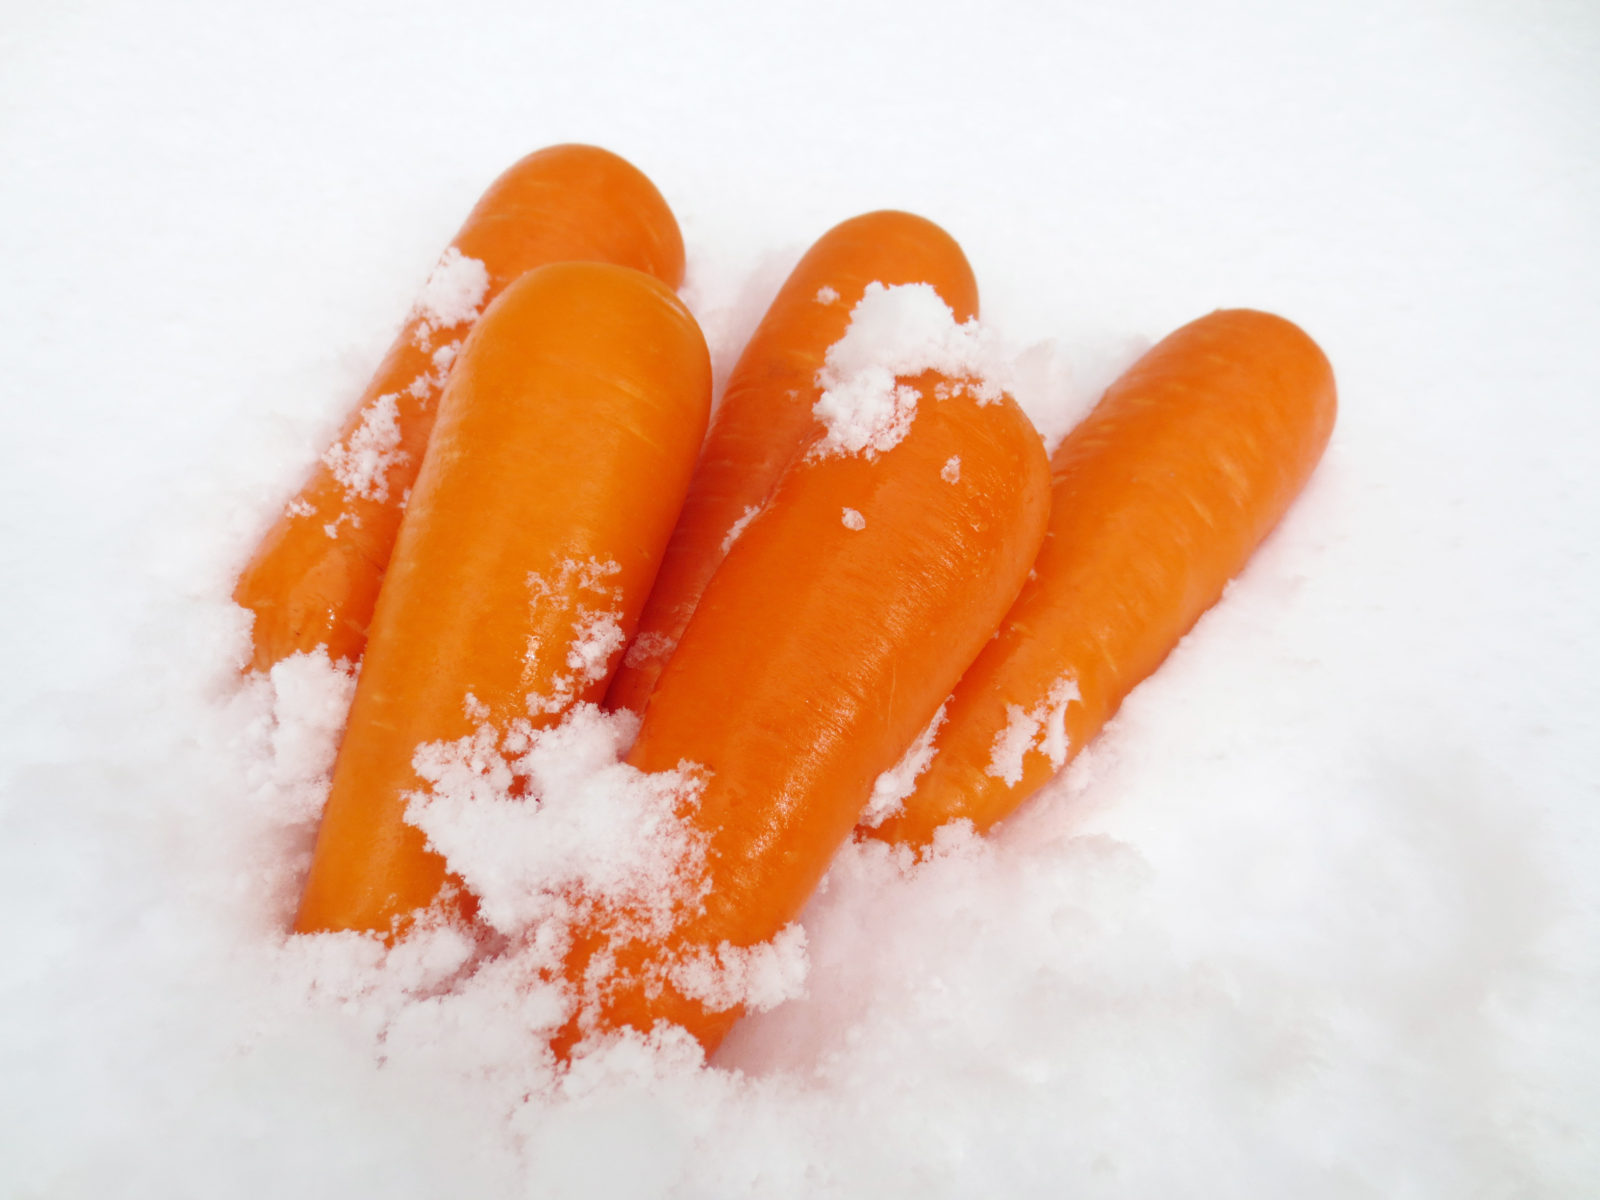 Fukaura Snow Carrots